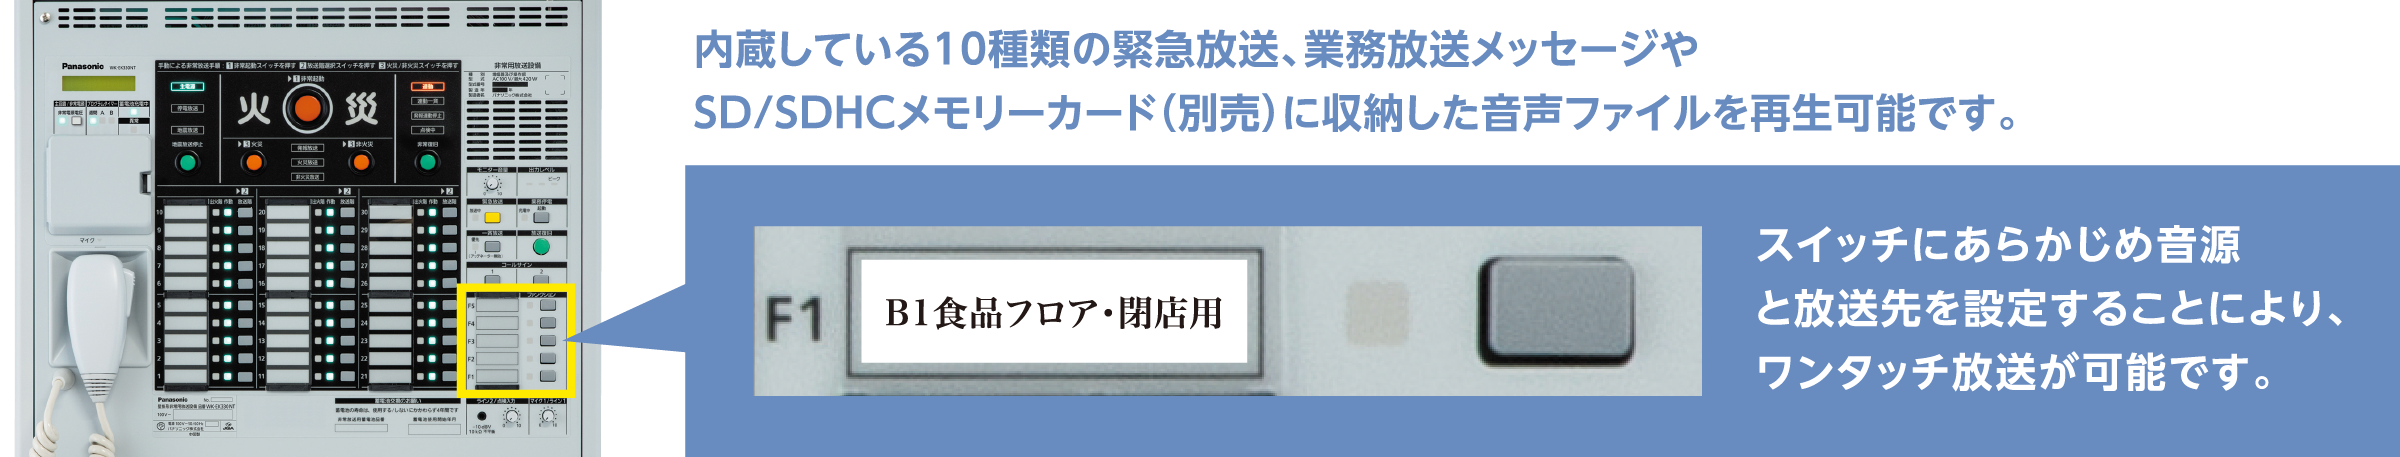 WK-EK310NT / WK-EK320NT / WK-EK330NT SDメモリーカード音源の再生数